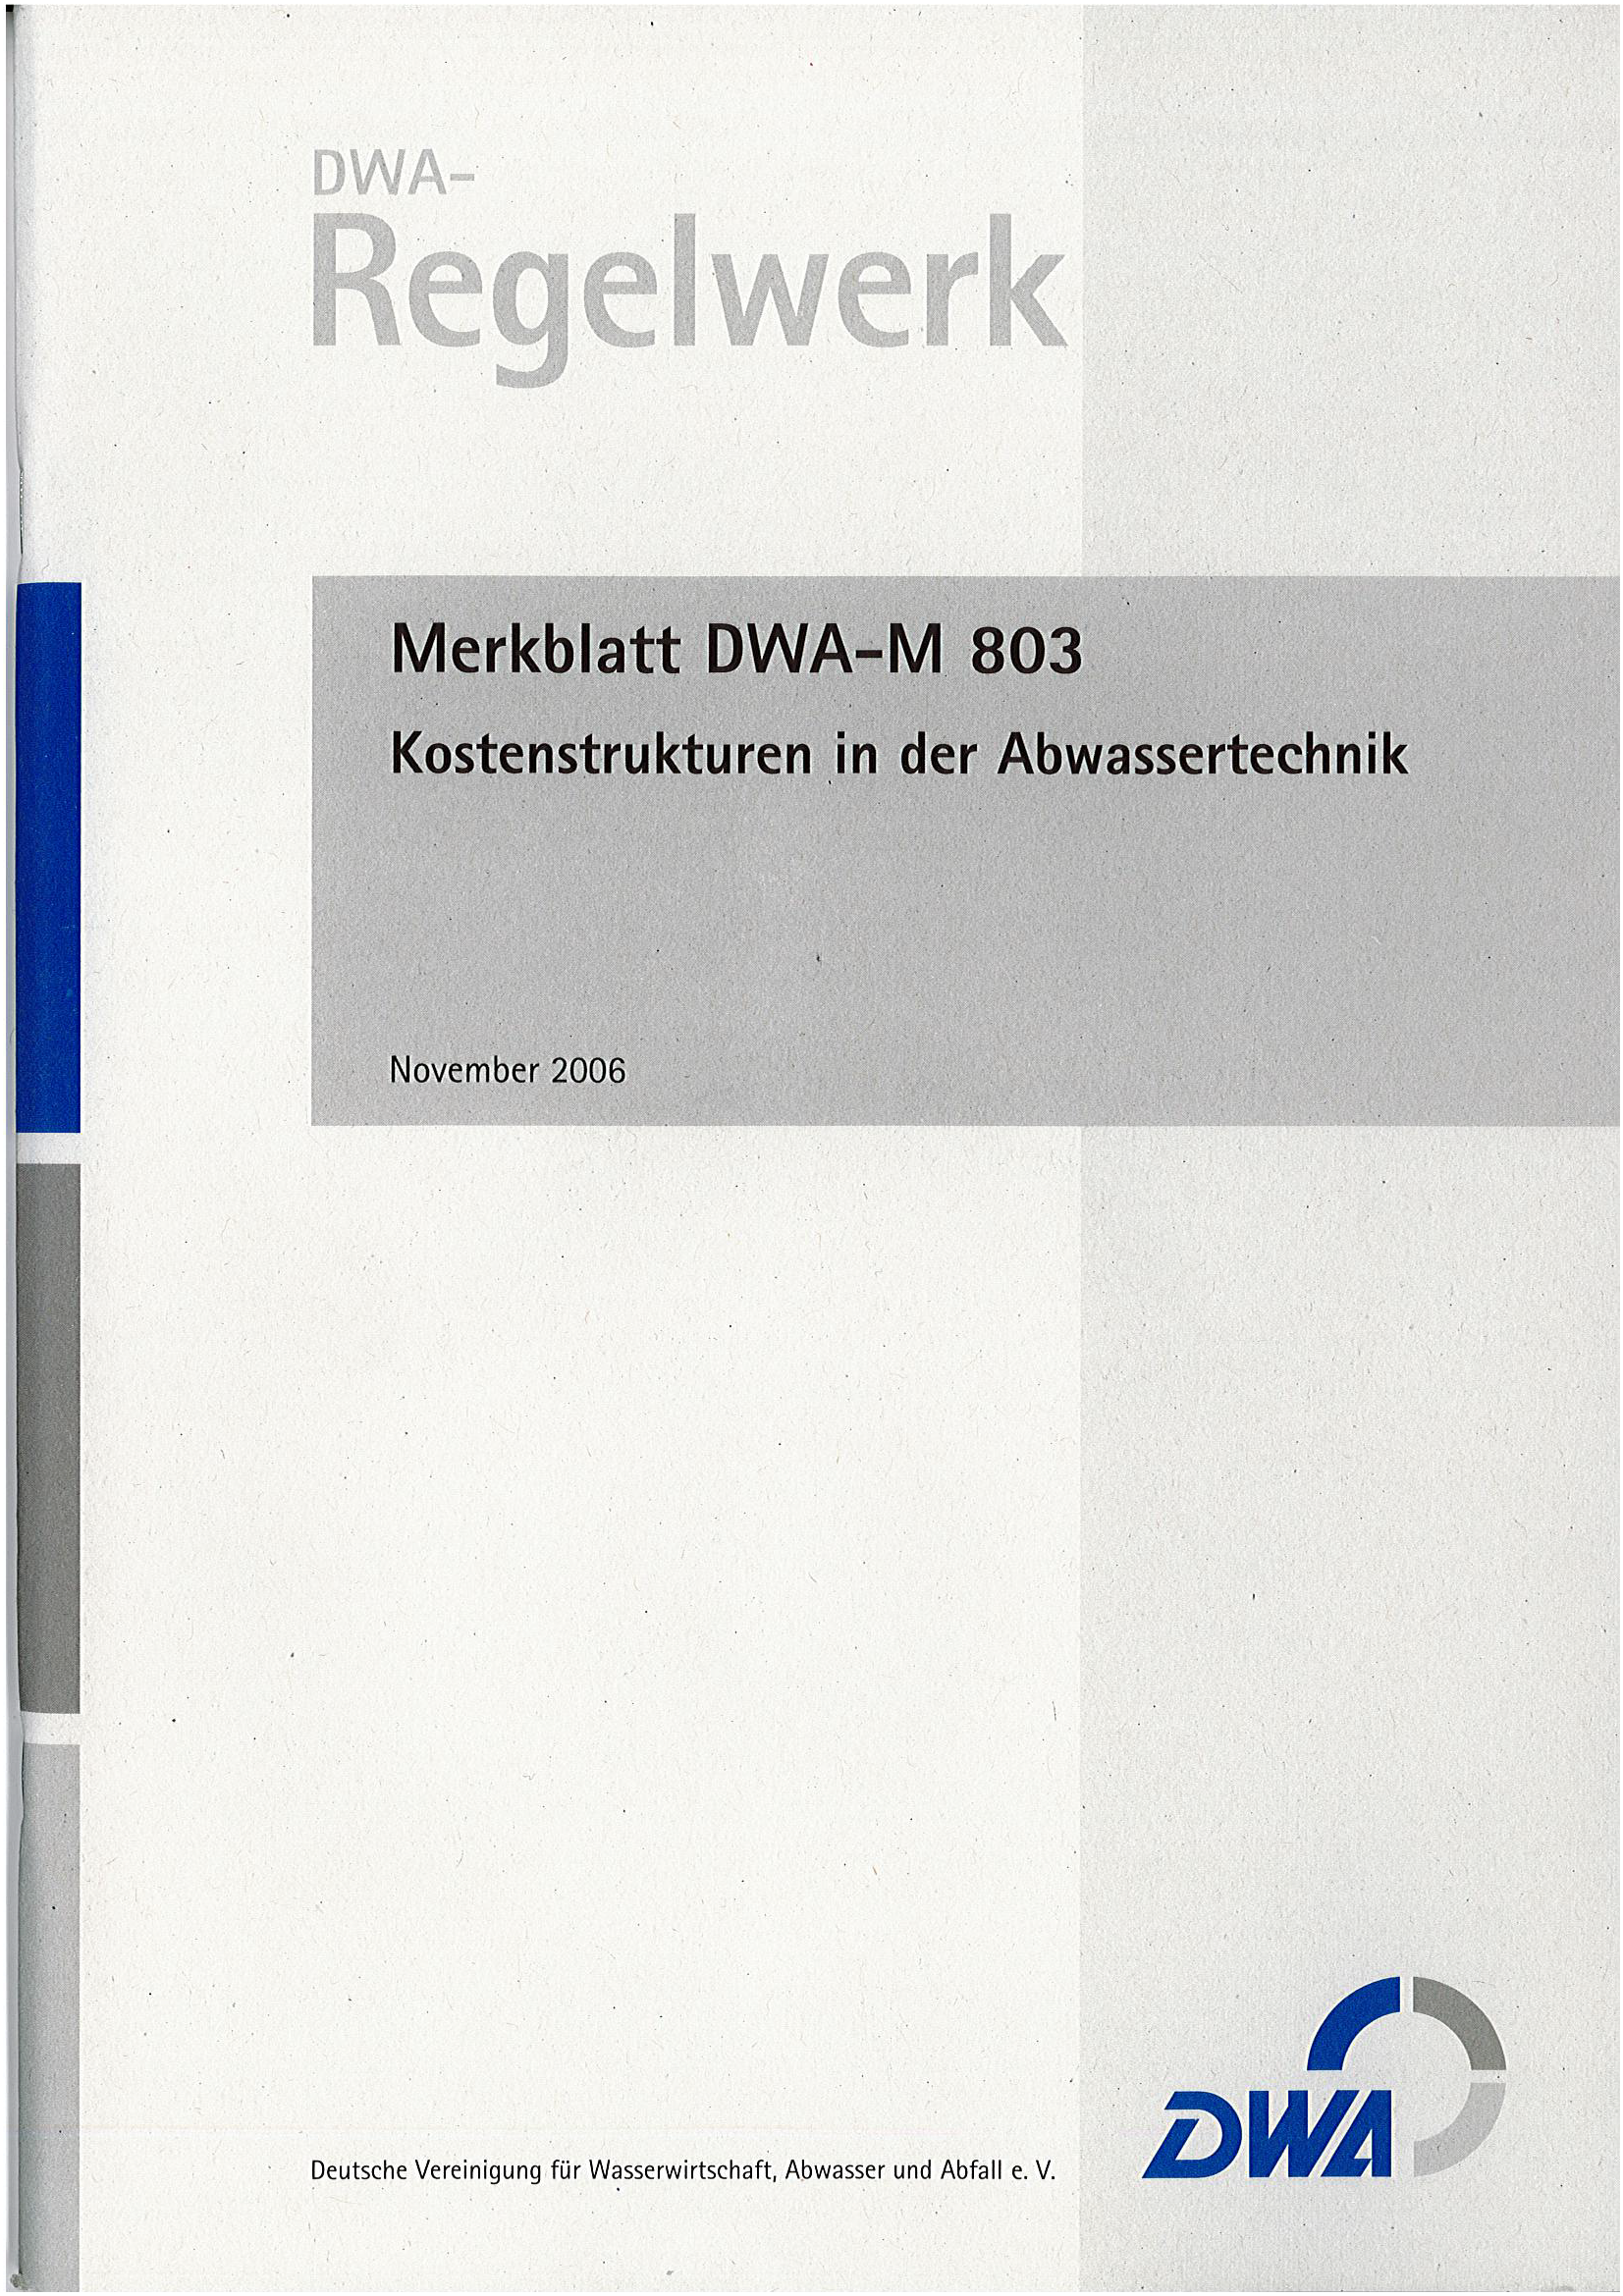 DWA-M 803 - Kostenstrukturen in der Abwassertechnik  - November 2006; Stand: korrigierte Fassung Januar 2007